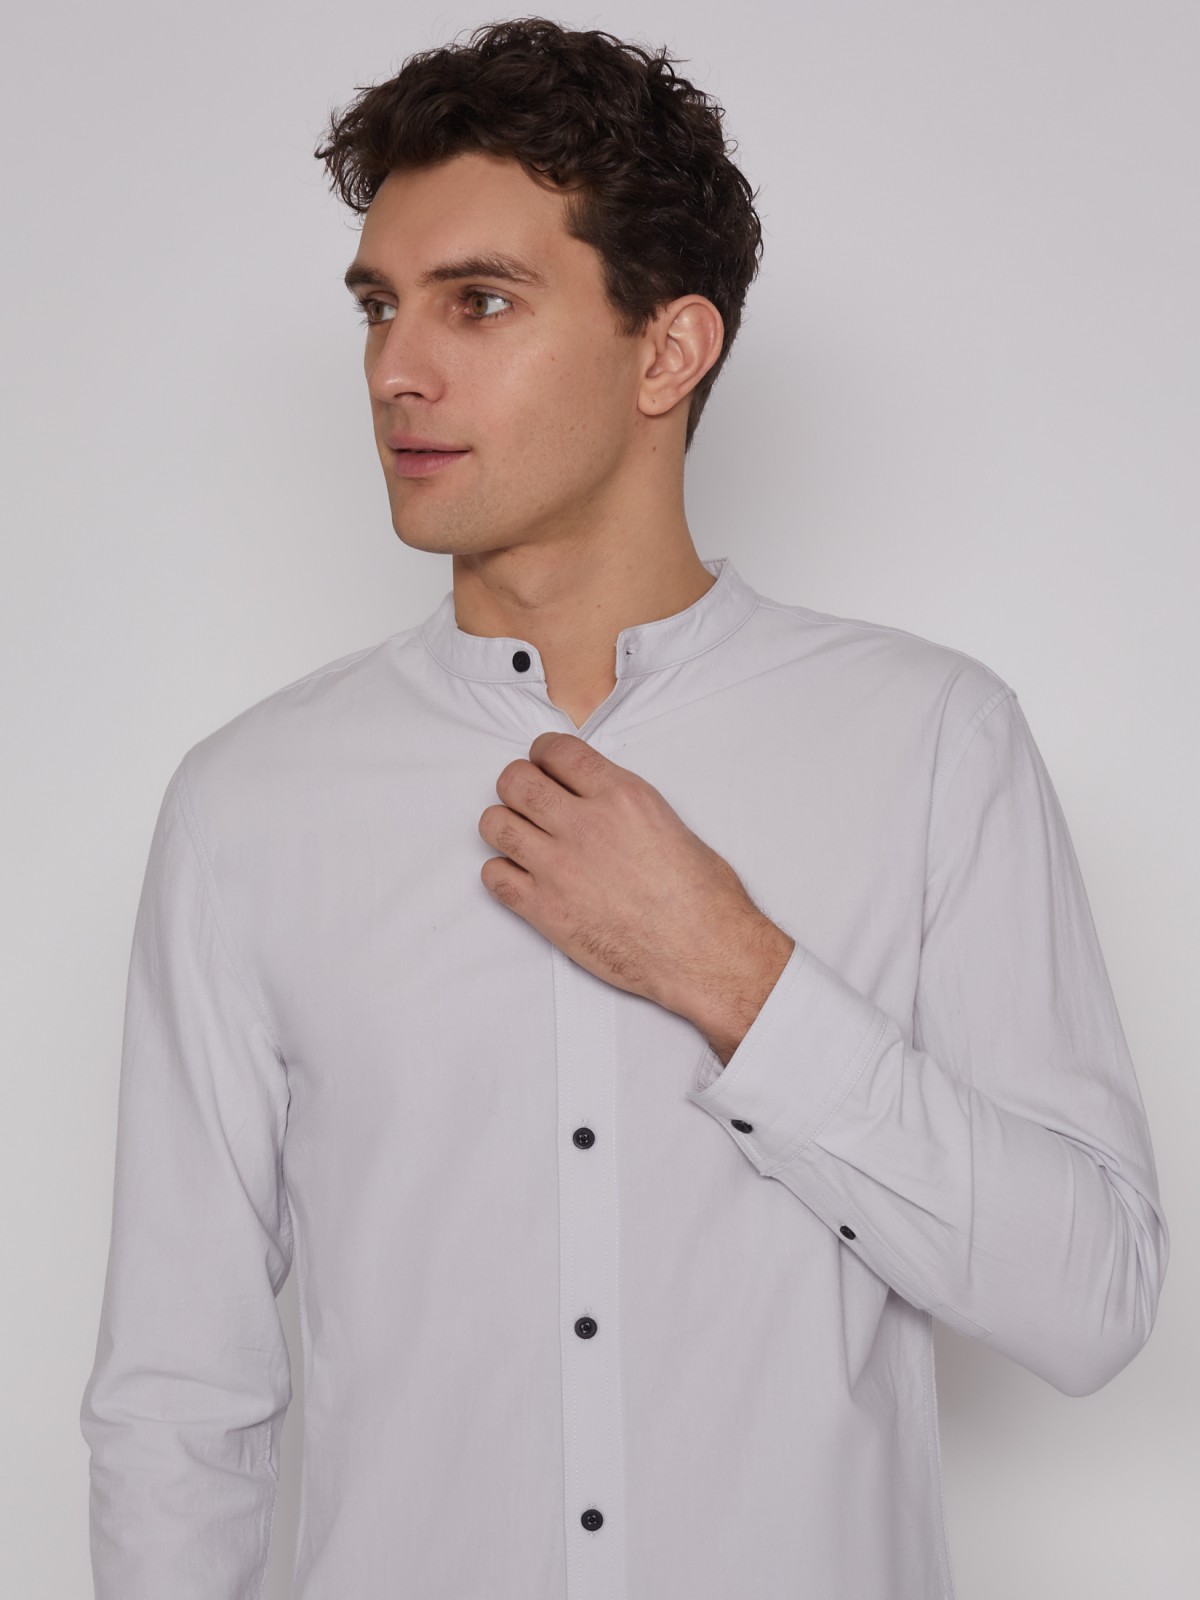 Рубашка с воротником-стойкой zolla 21221217Y031, цвет светло-серый, размер S - фото 3